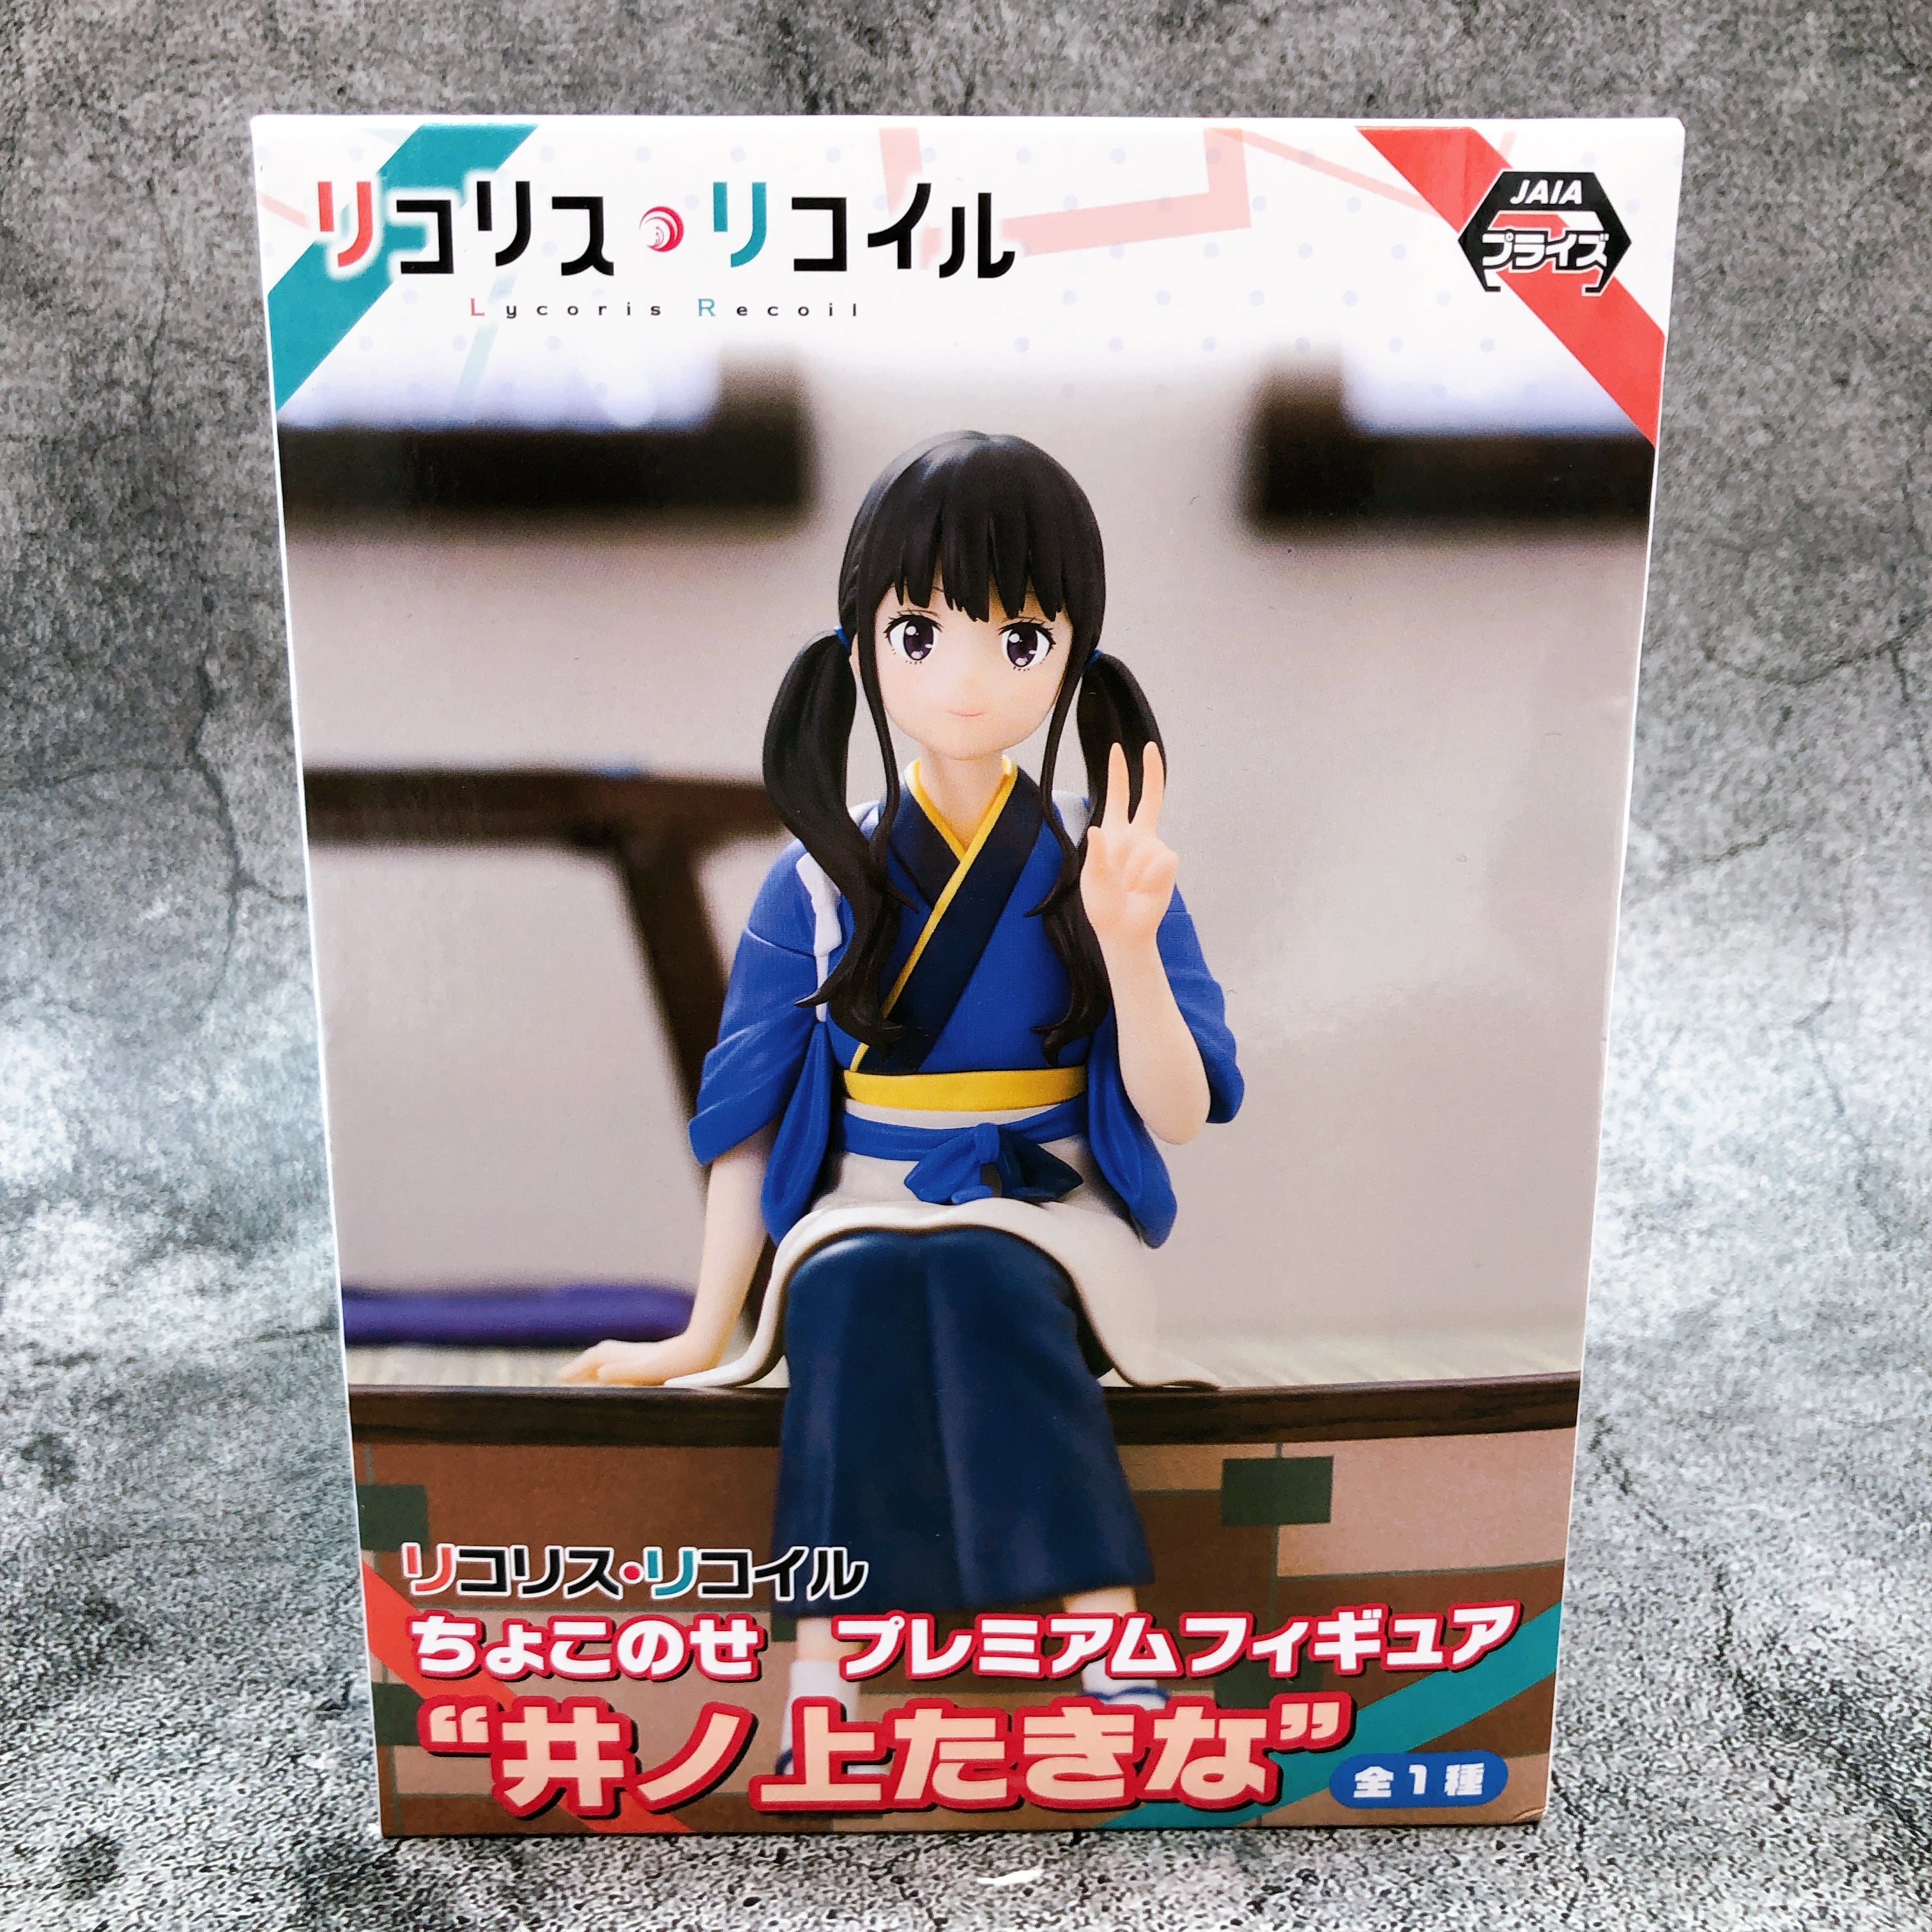 AmiAmi [Character & Hobby Shop]  Lycoris Recoil Chisato & Takina